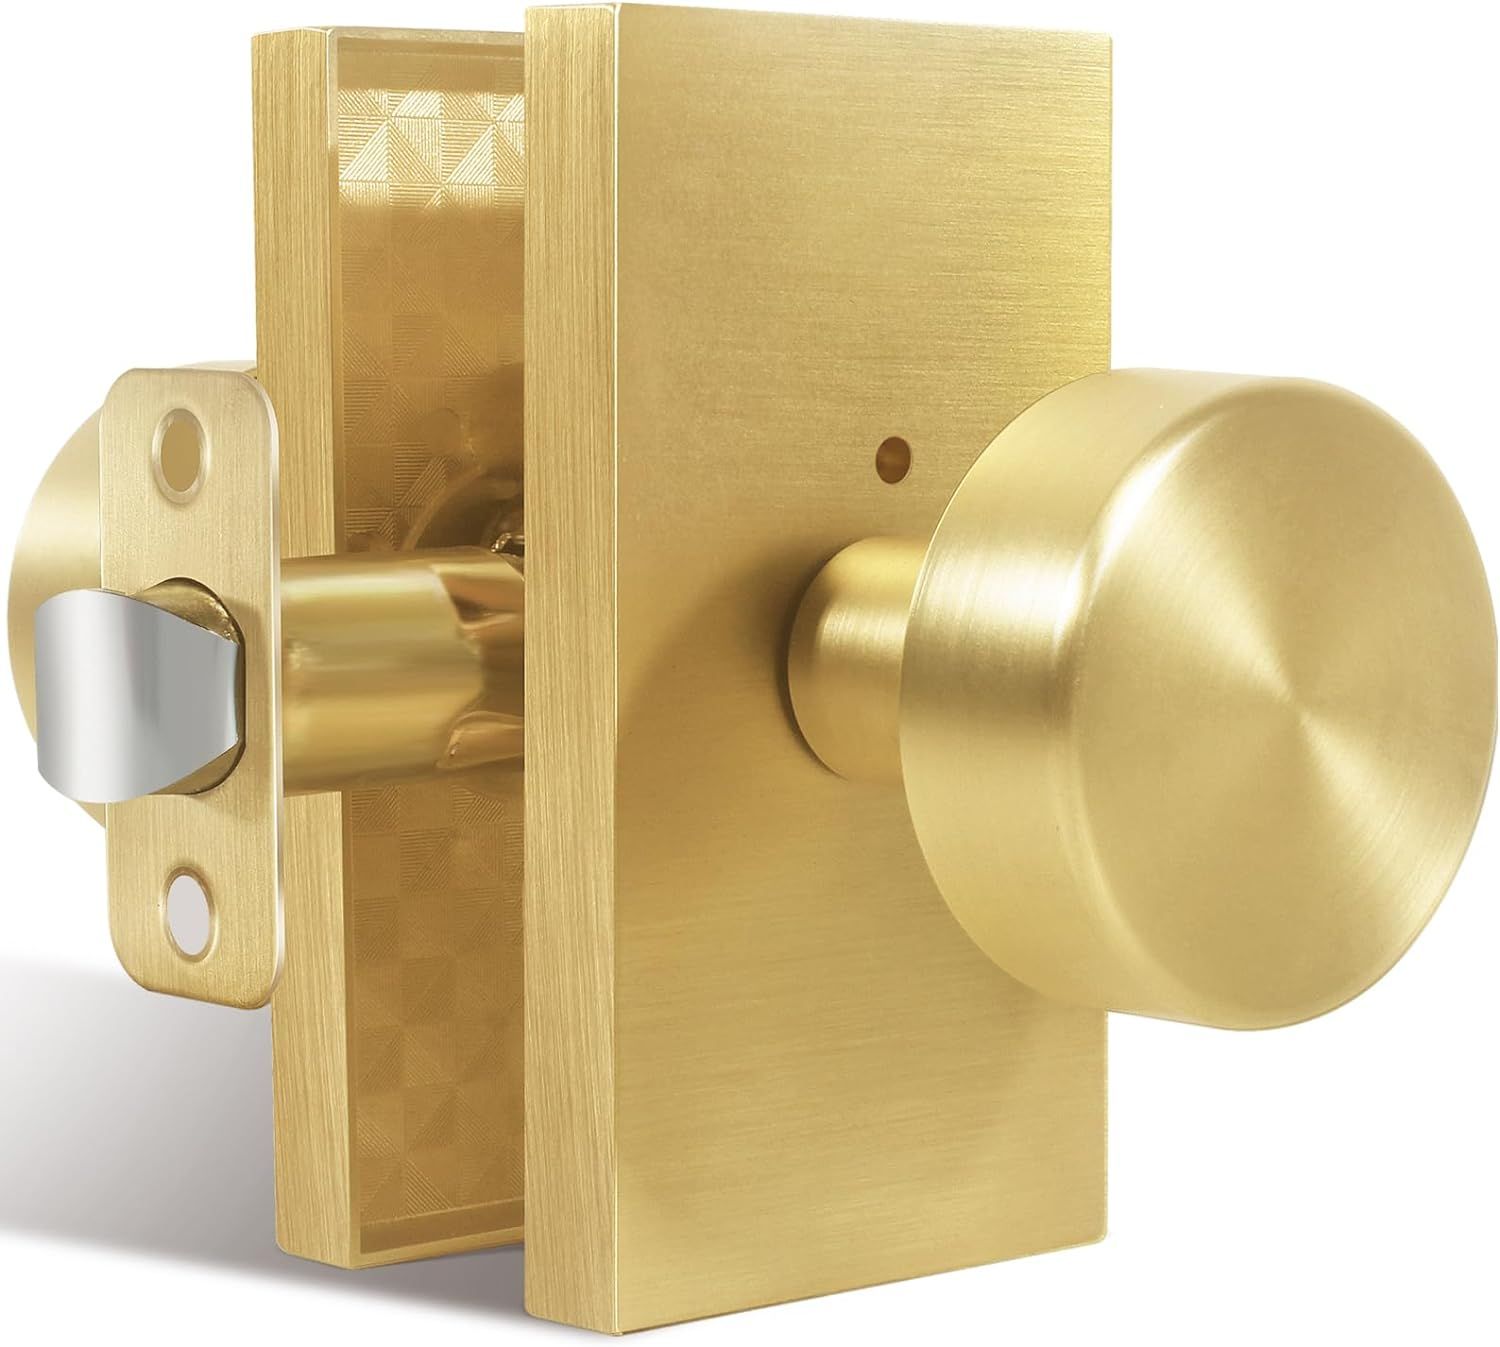 Privacy Gold Door Knob Interior, Satin Brass Door Knobs with Lock, Modern Round Door Handles for ... | Amazon (US)